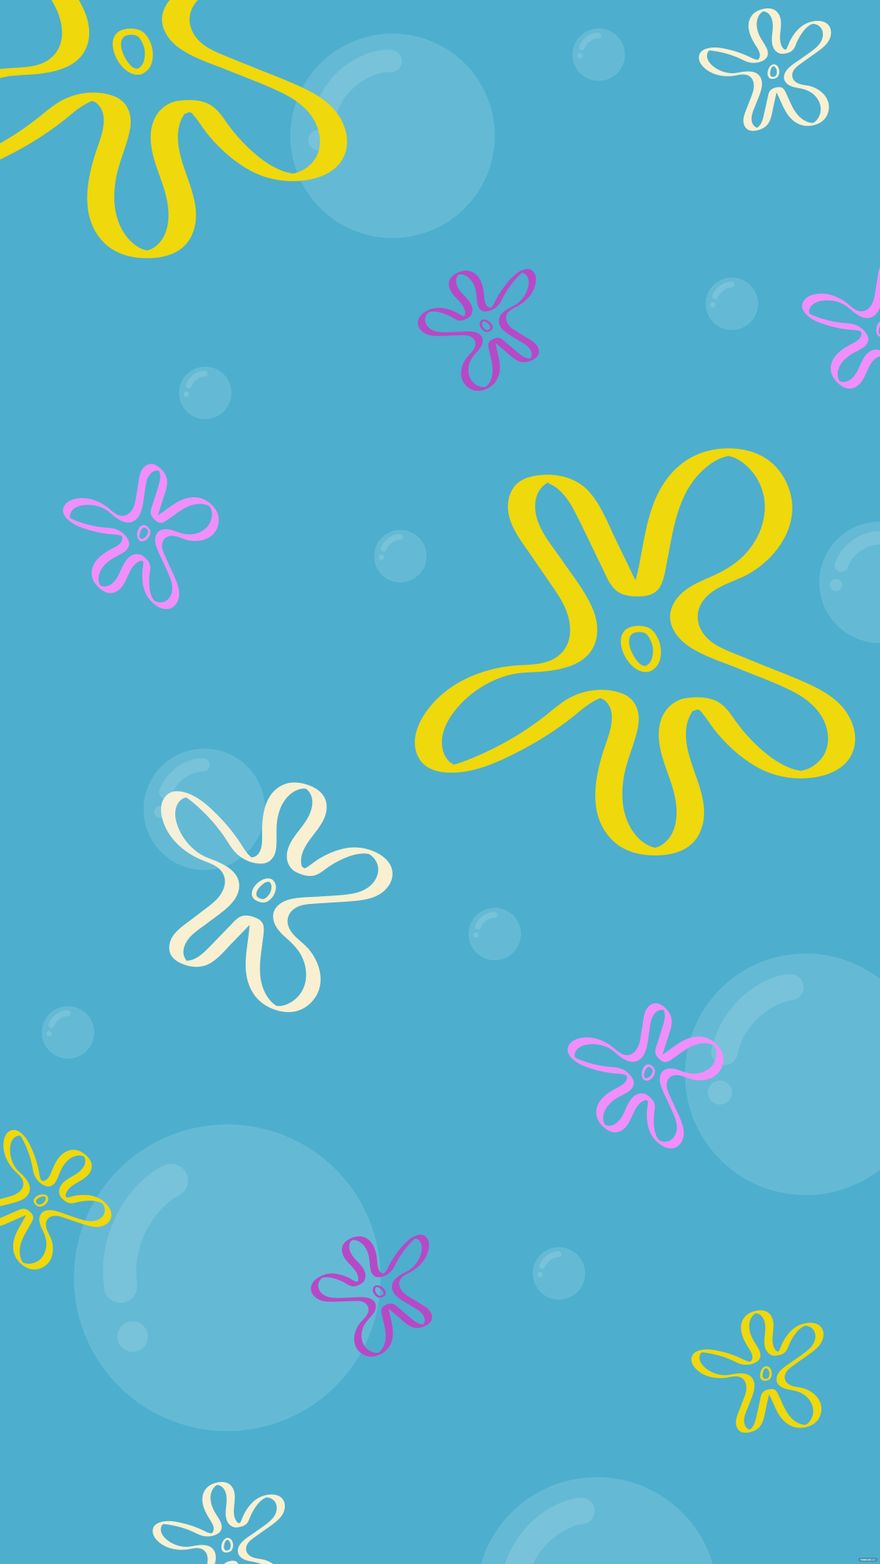 Free Spongebob Floral Background in Illustrator, EPS, SVG, JPG